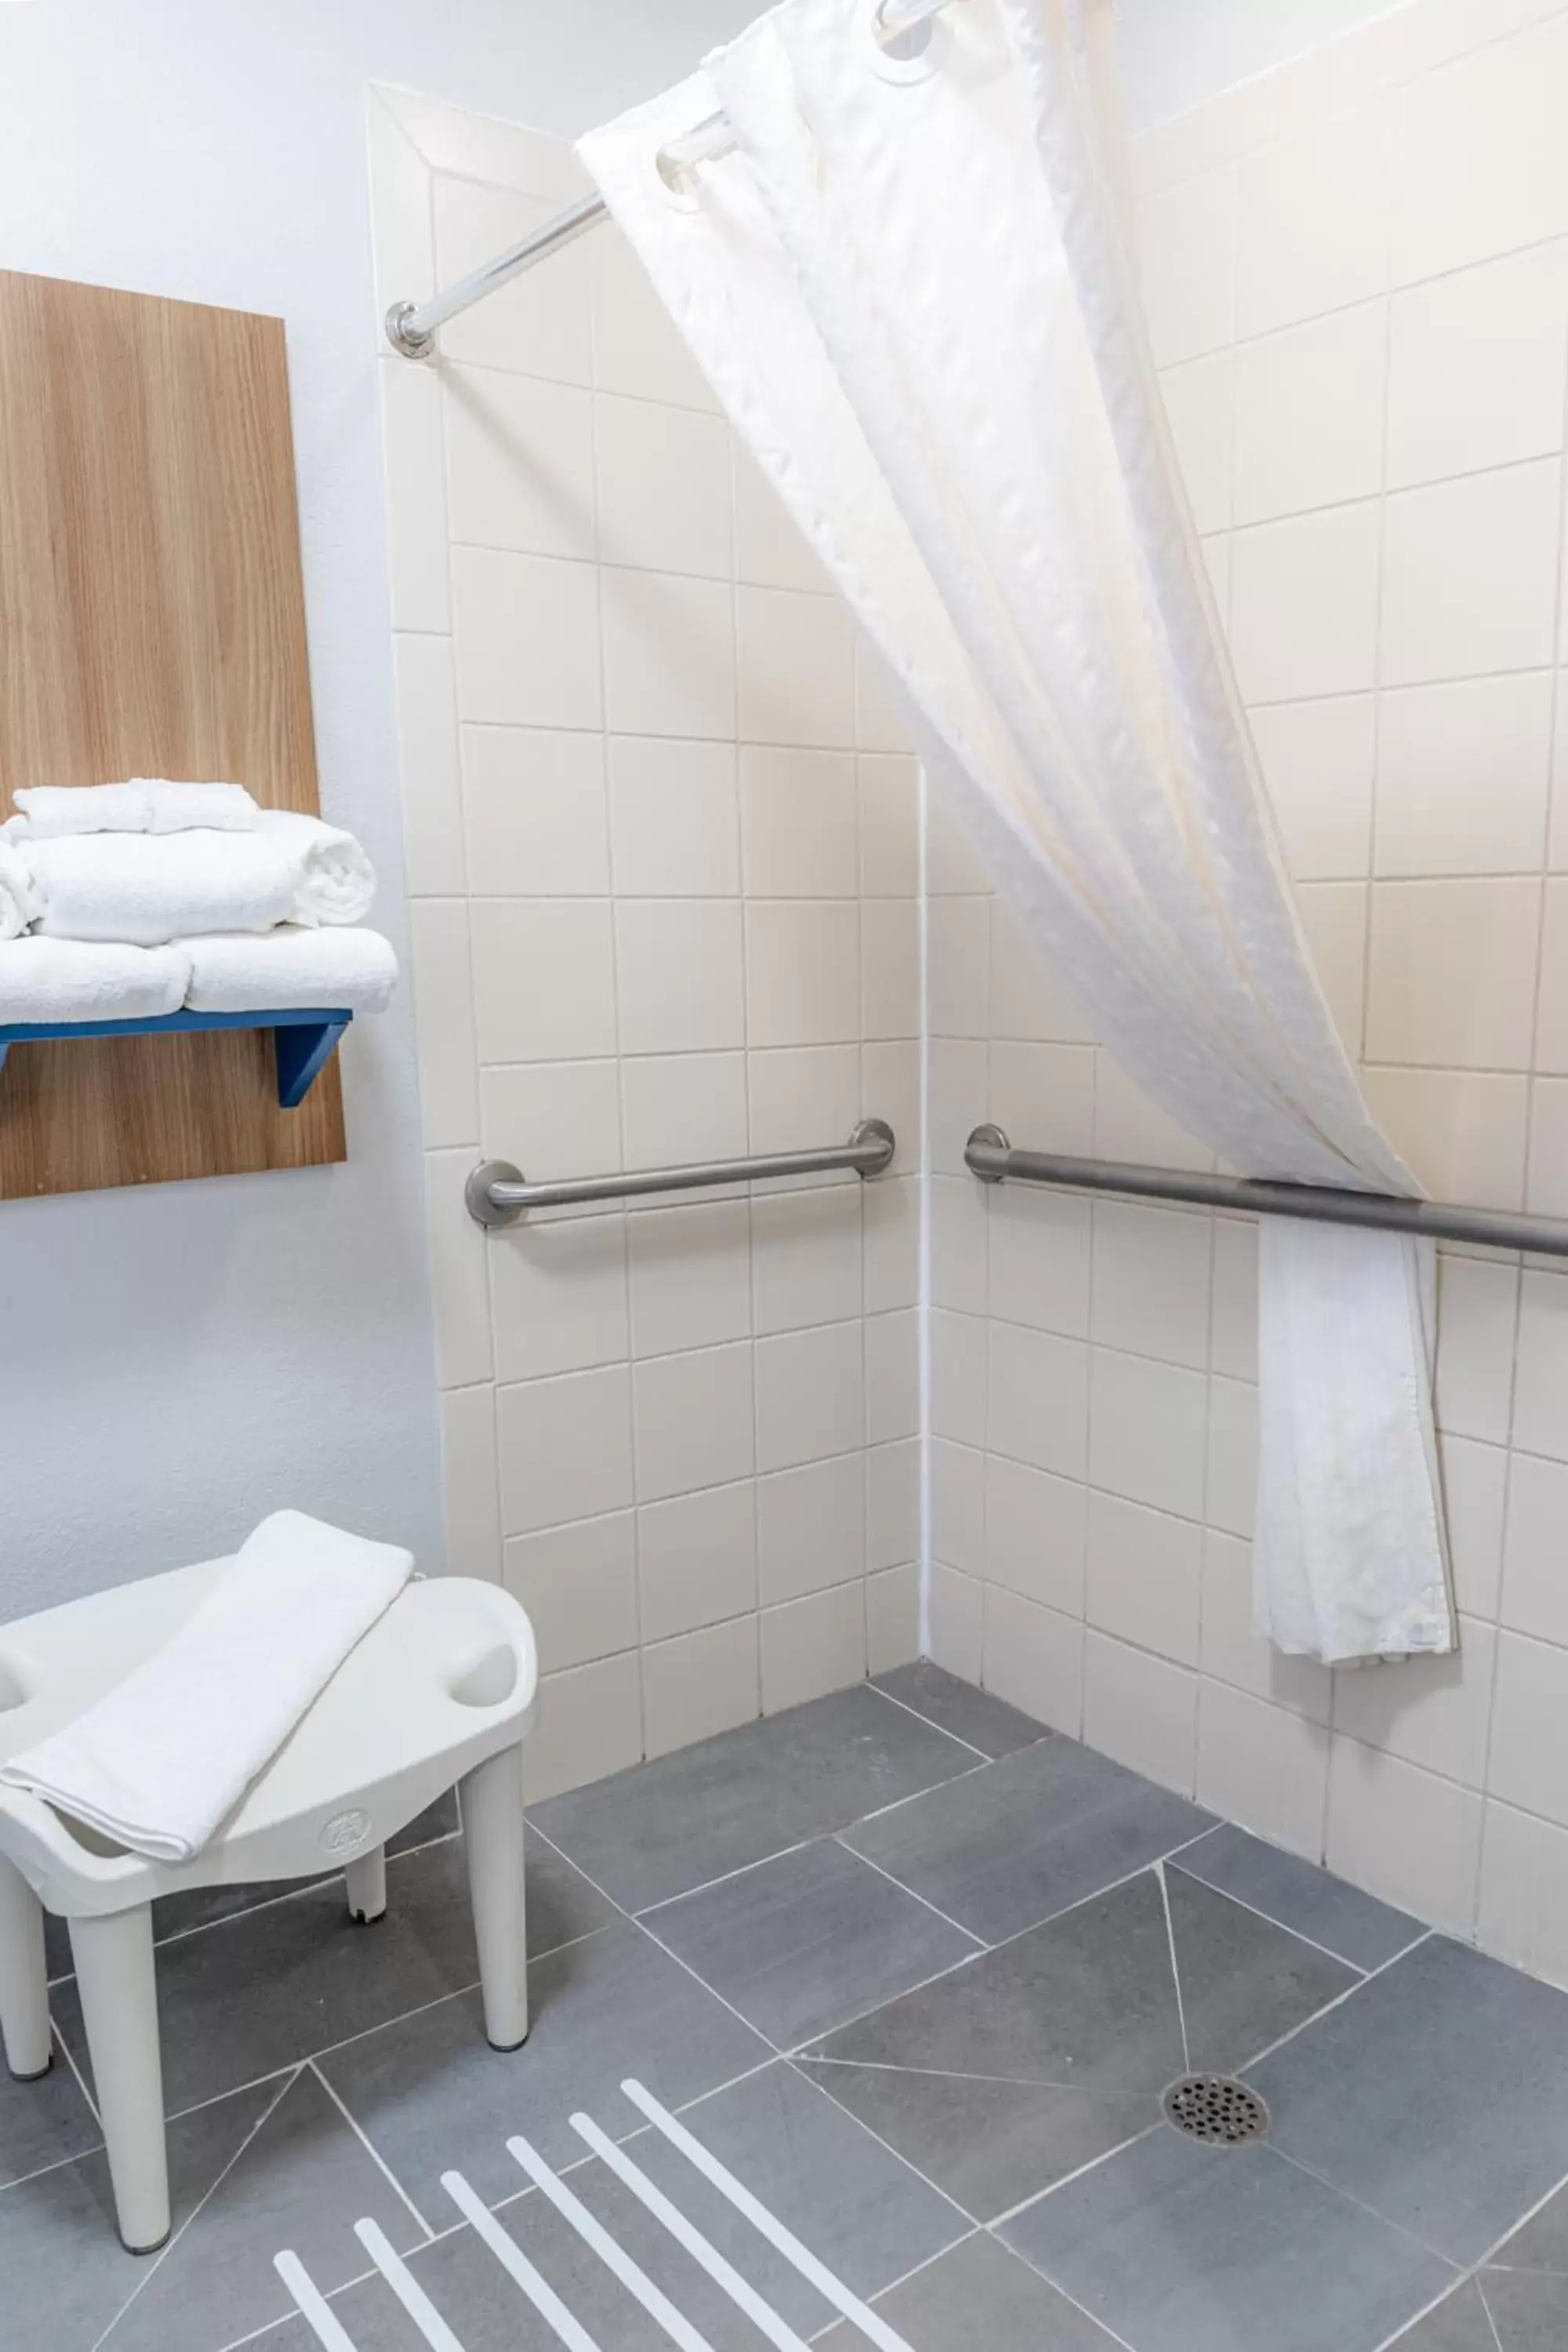 Shower, Bathroom in Microtel Inn & Suites by Wyndham Kingsland